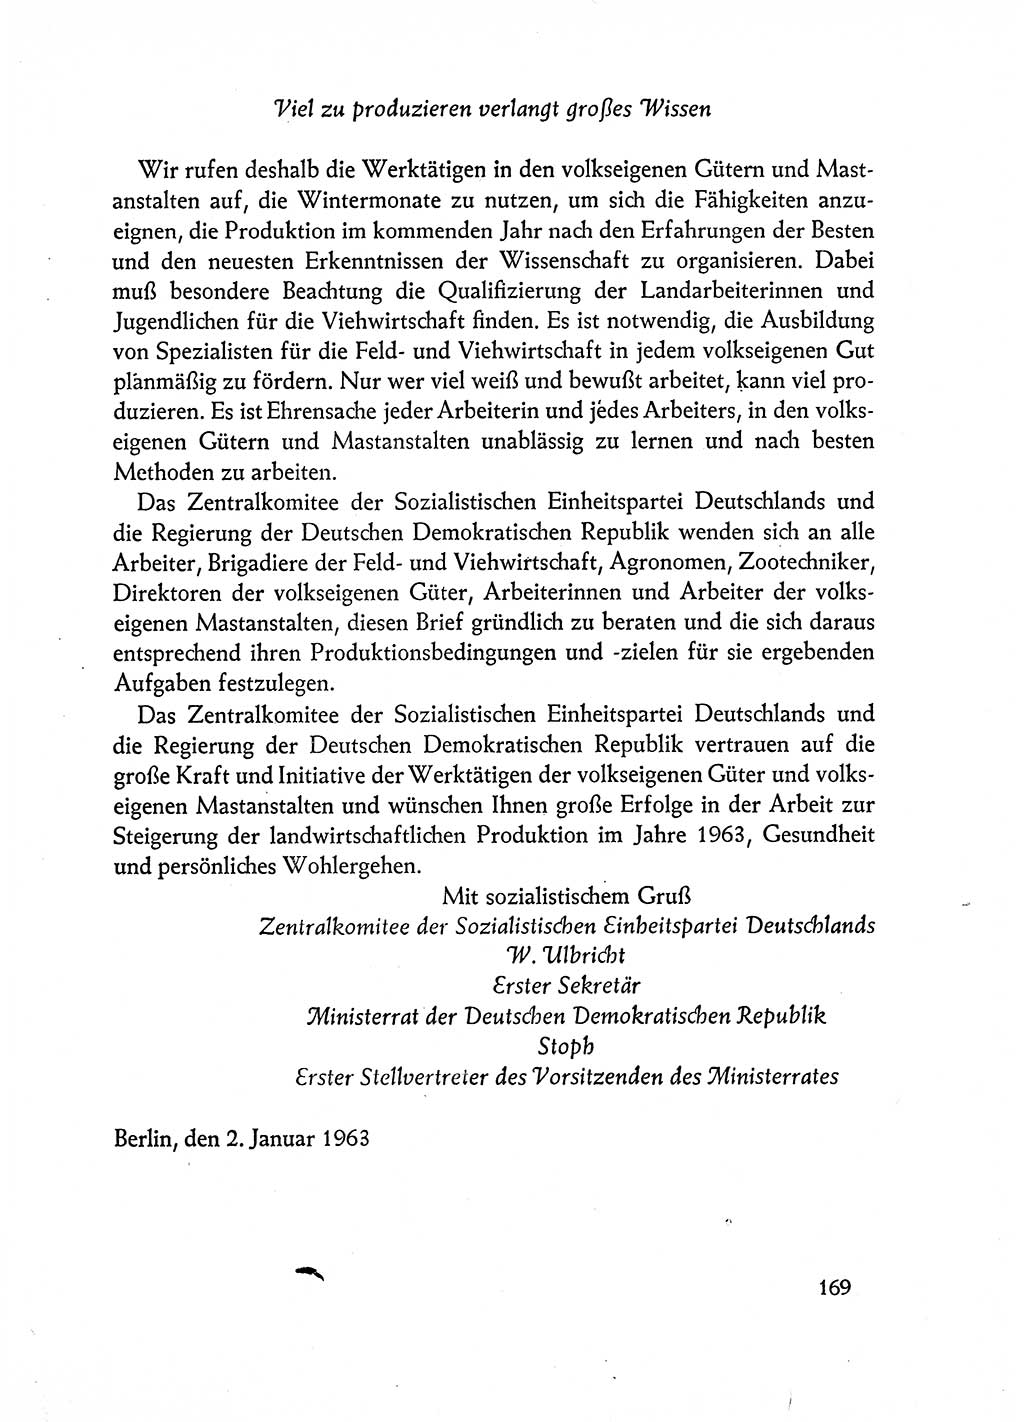 Dokumente der Sozialistischen Einheitspartei Deutschlands (SED) [Deutsche Demokratische Republik (DDR)] 1962-1963, Seite 169 (Dok. SED DDR 1962-1963, S. 169)